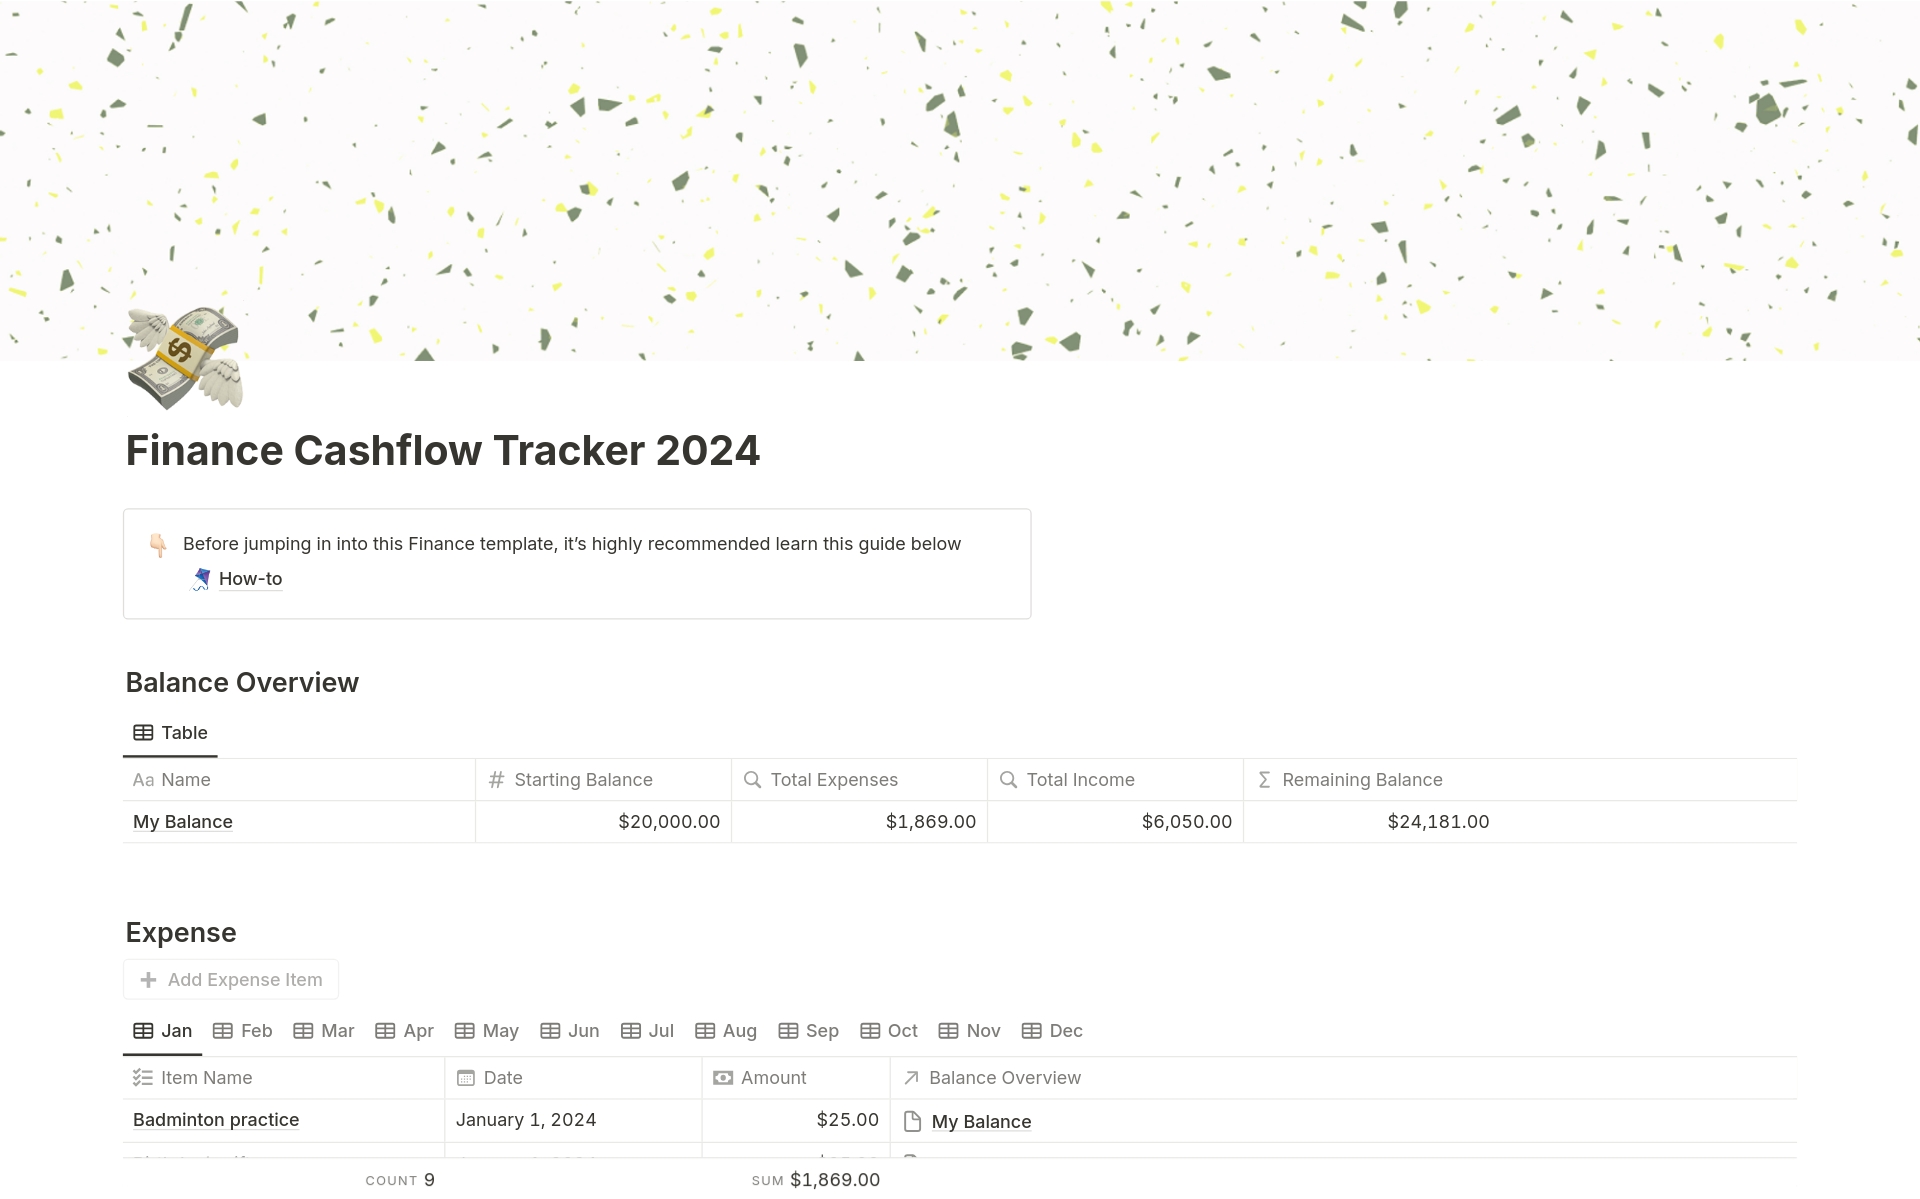 Aperçu du modèle de Finance Cashflow Tracker